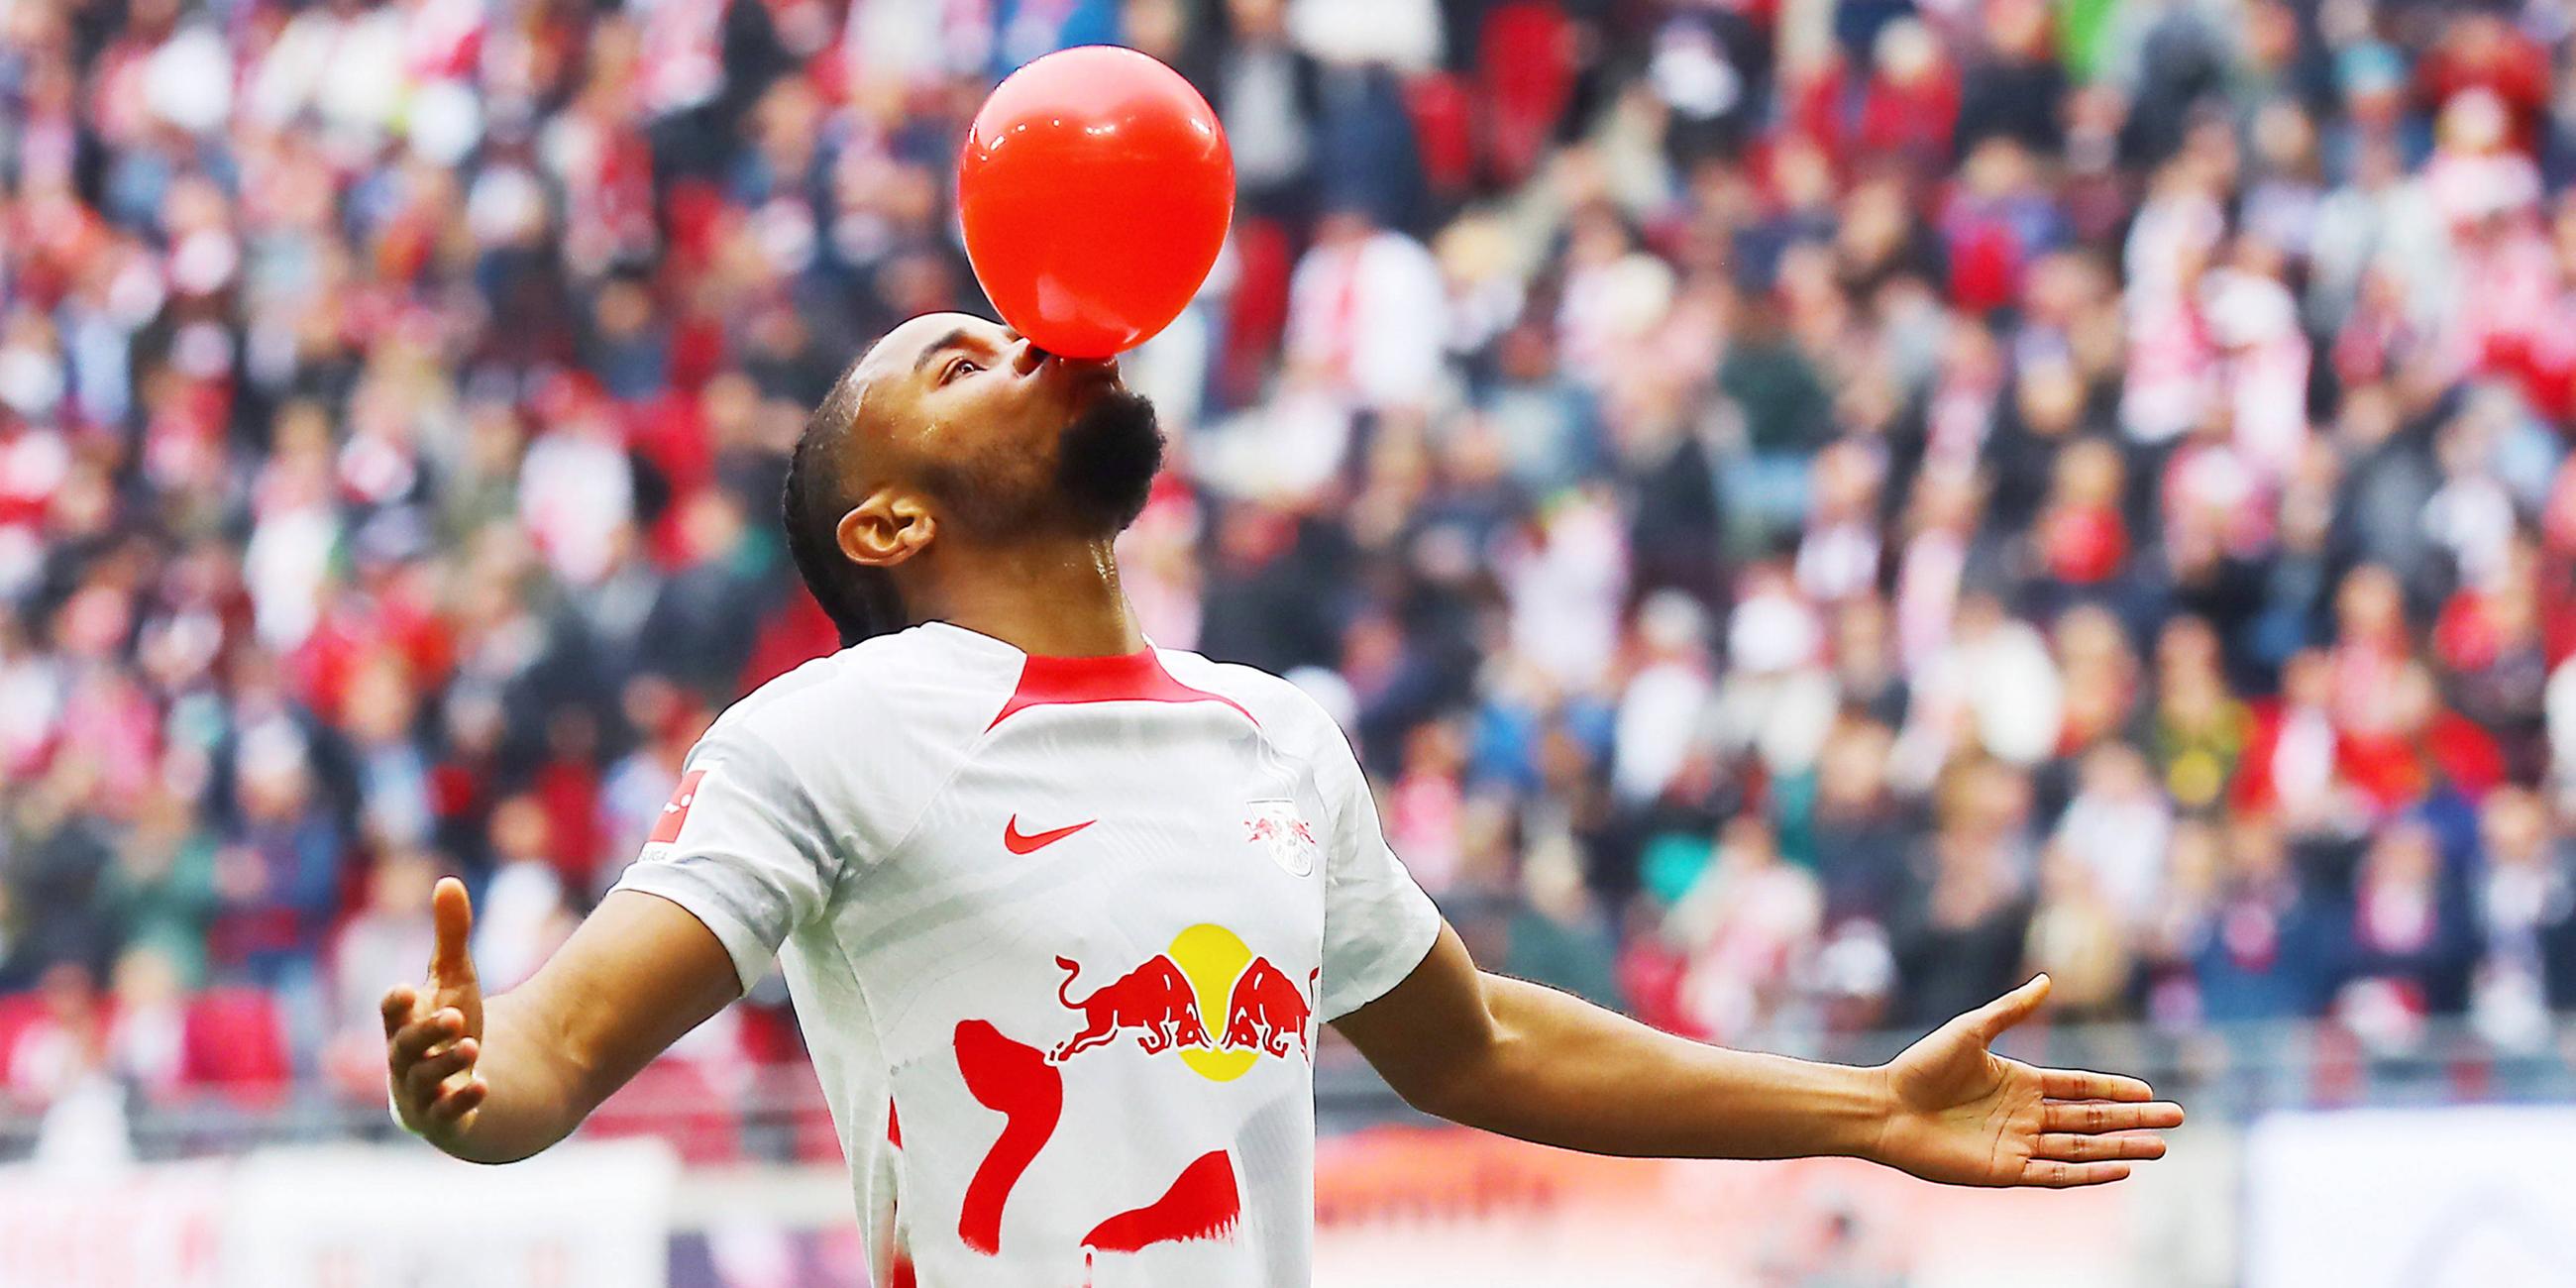 Christopher Nkunku (RB Leipzig) bejubelt sein Tor mit einem rotem Luftballon im Mund